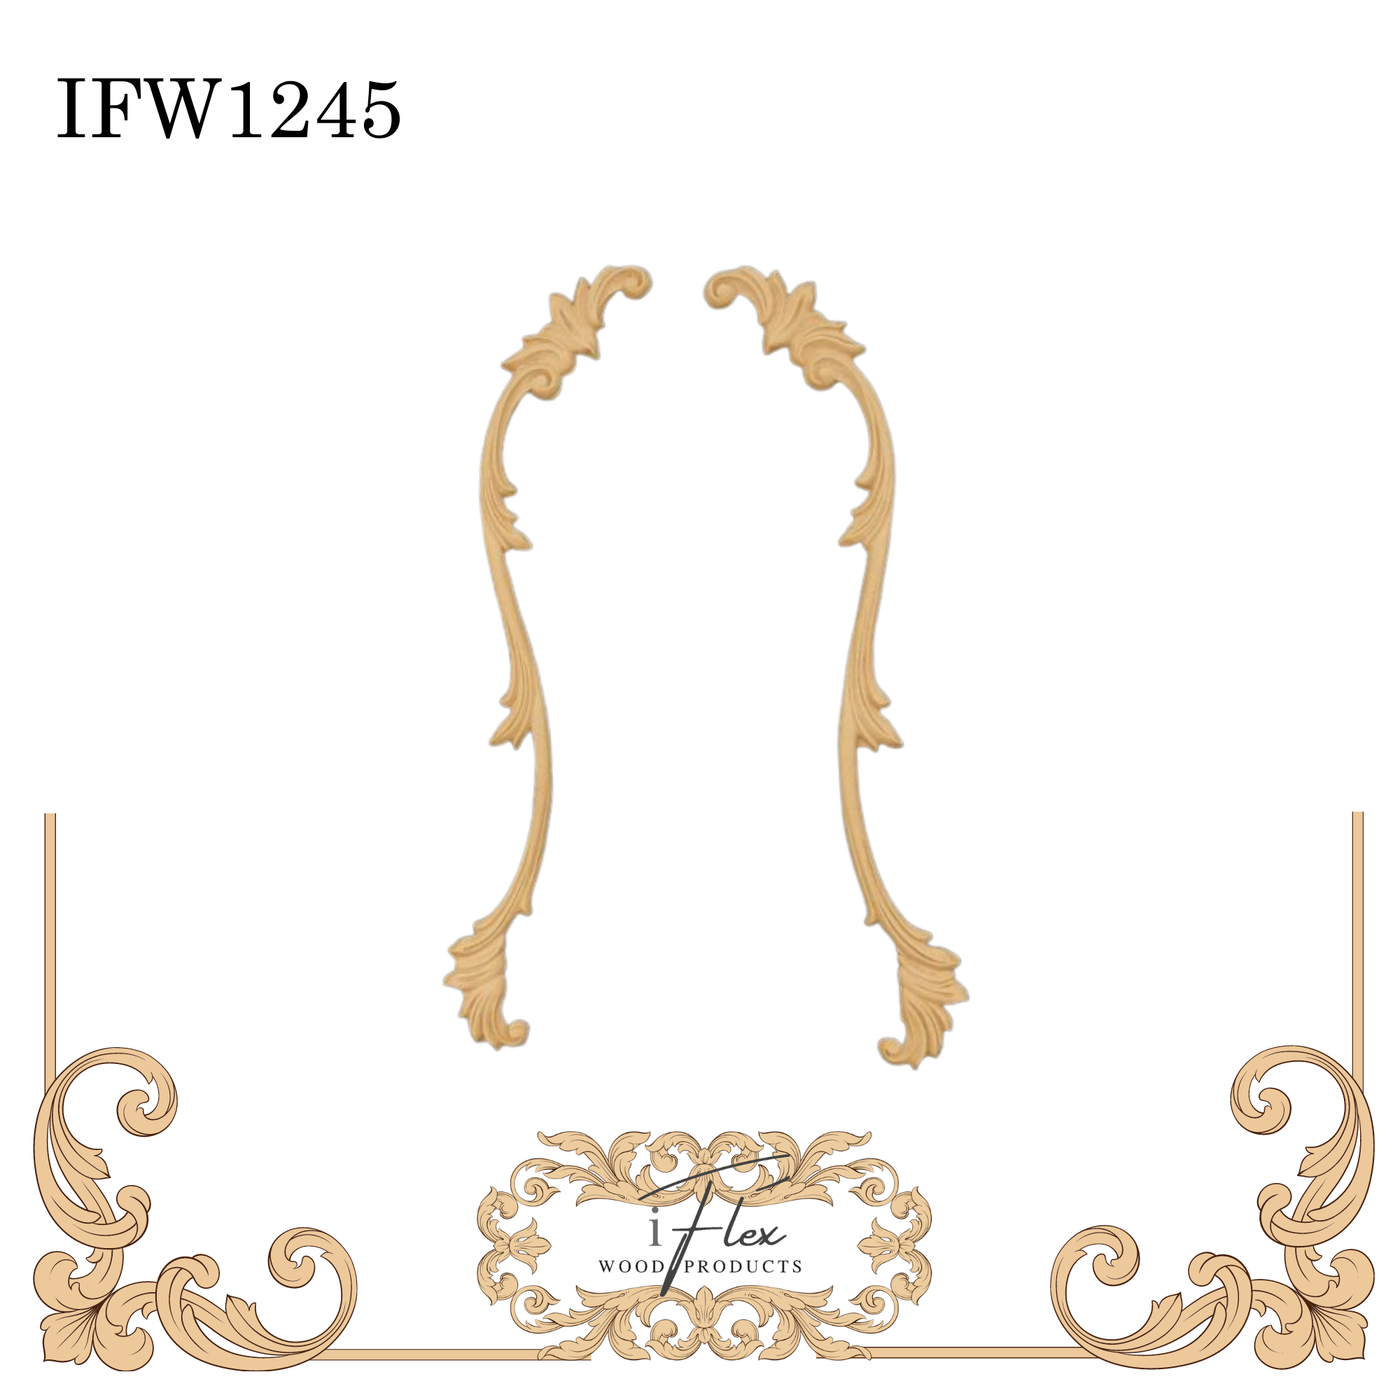 IFW 1245